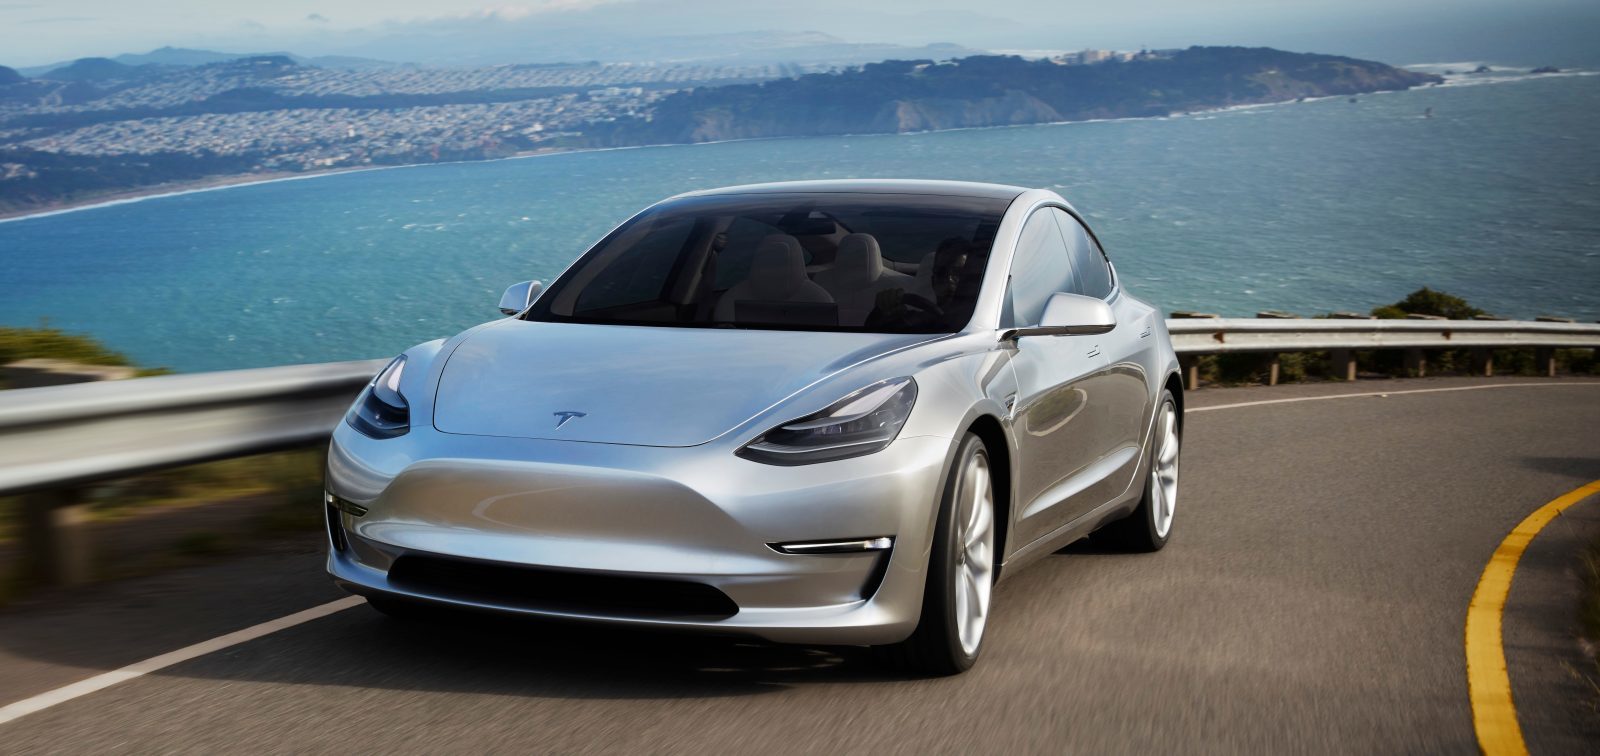 Bảng giá xe Tesla mới nhất